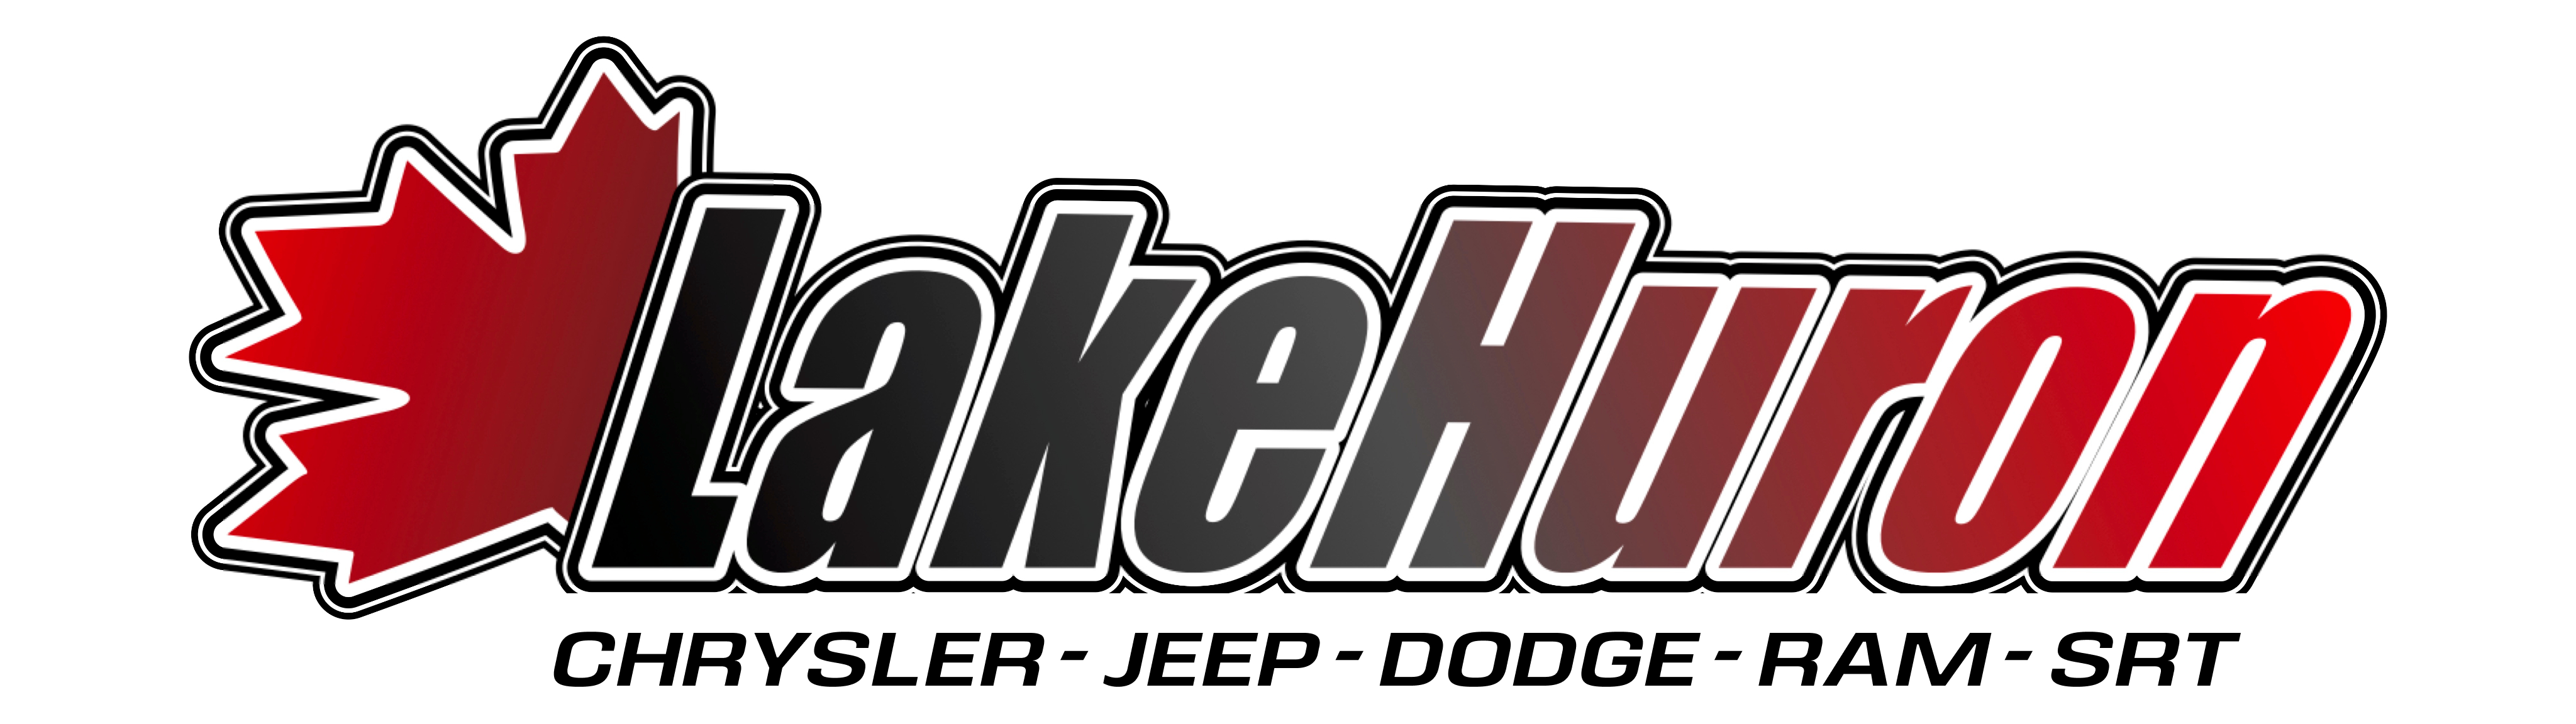 Lake Huron Chrysler logo